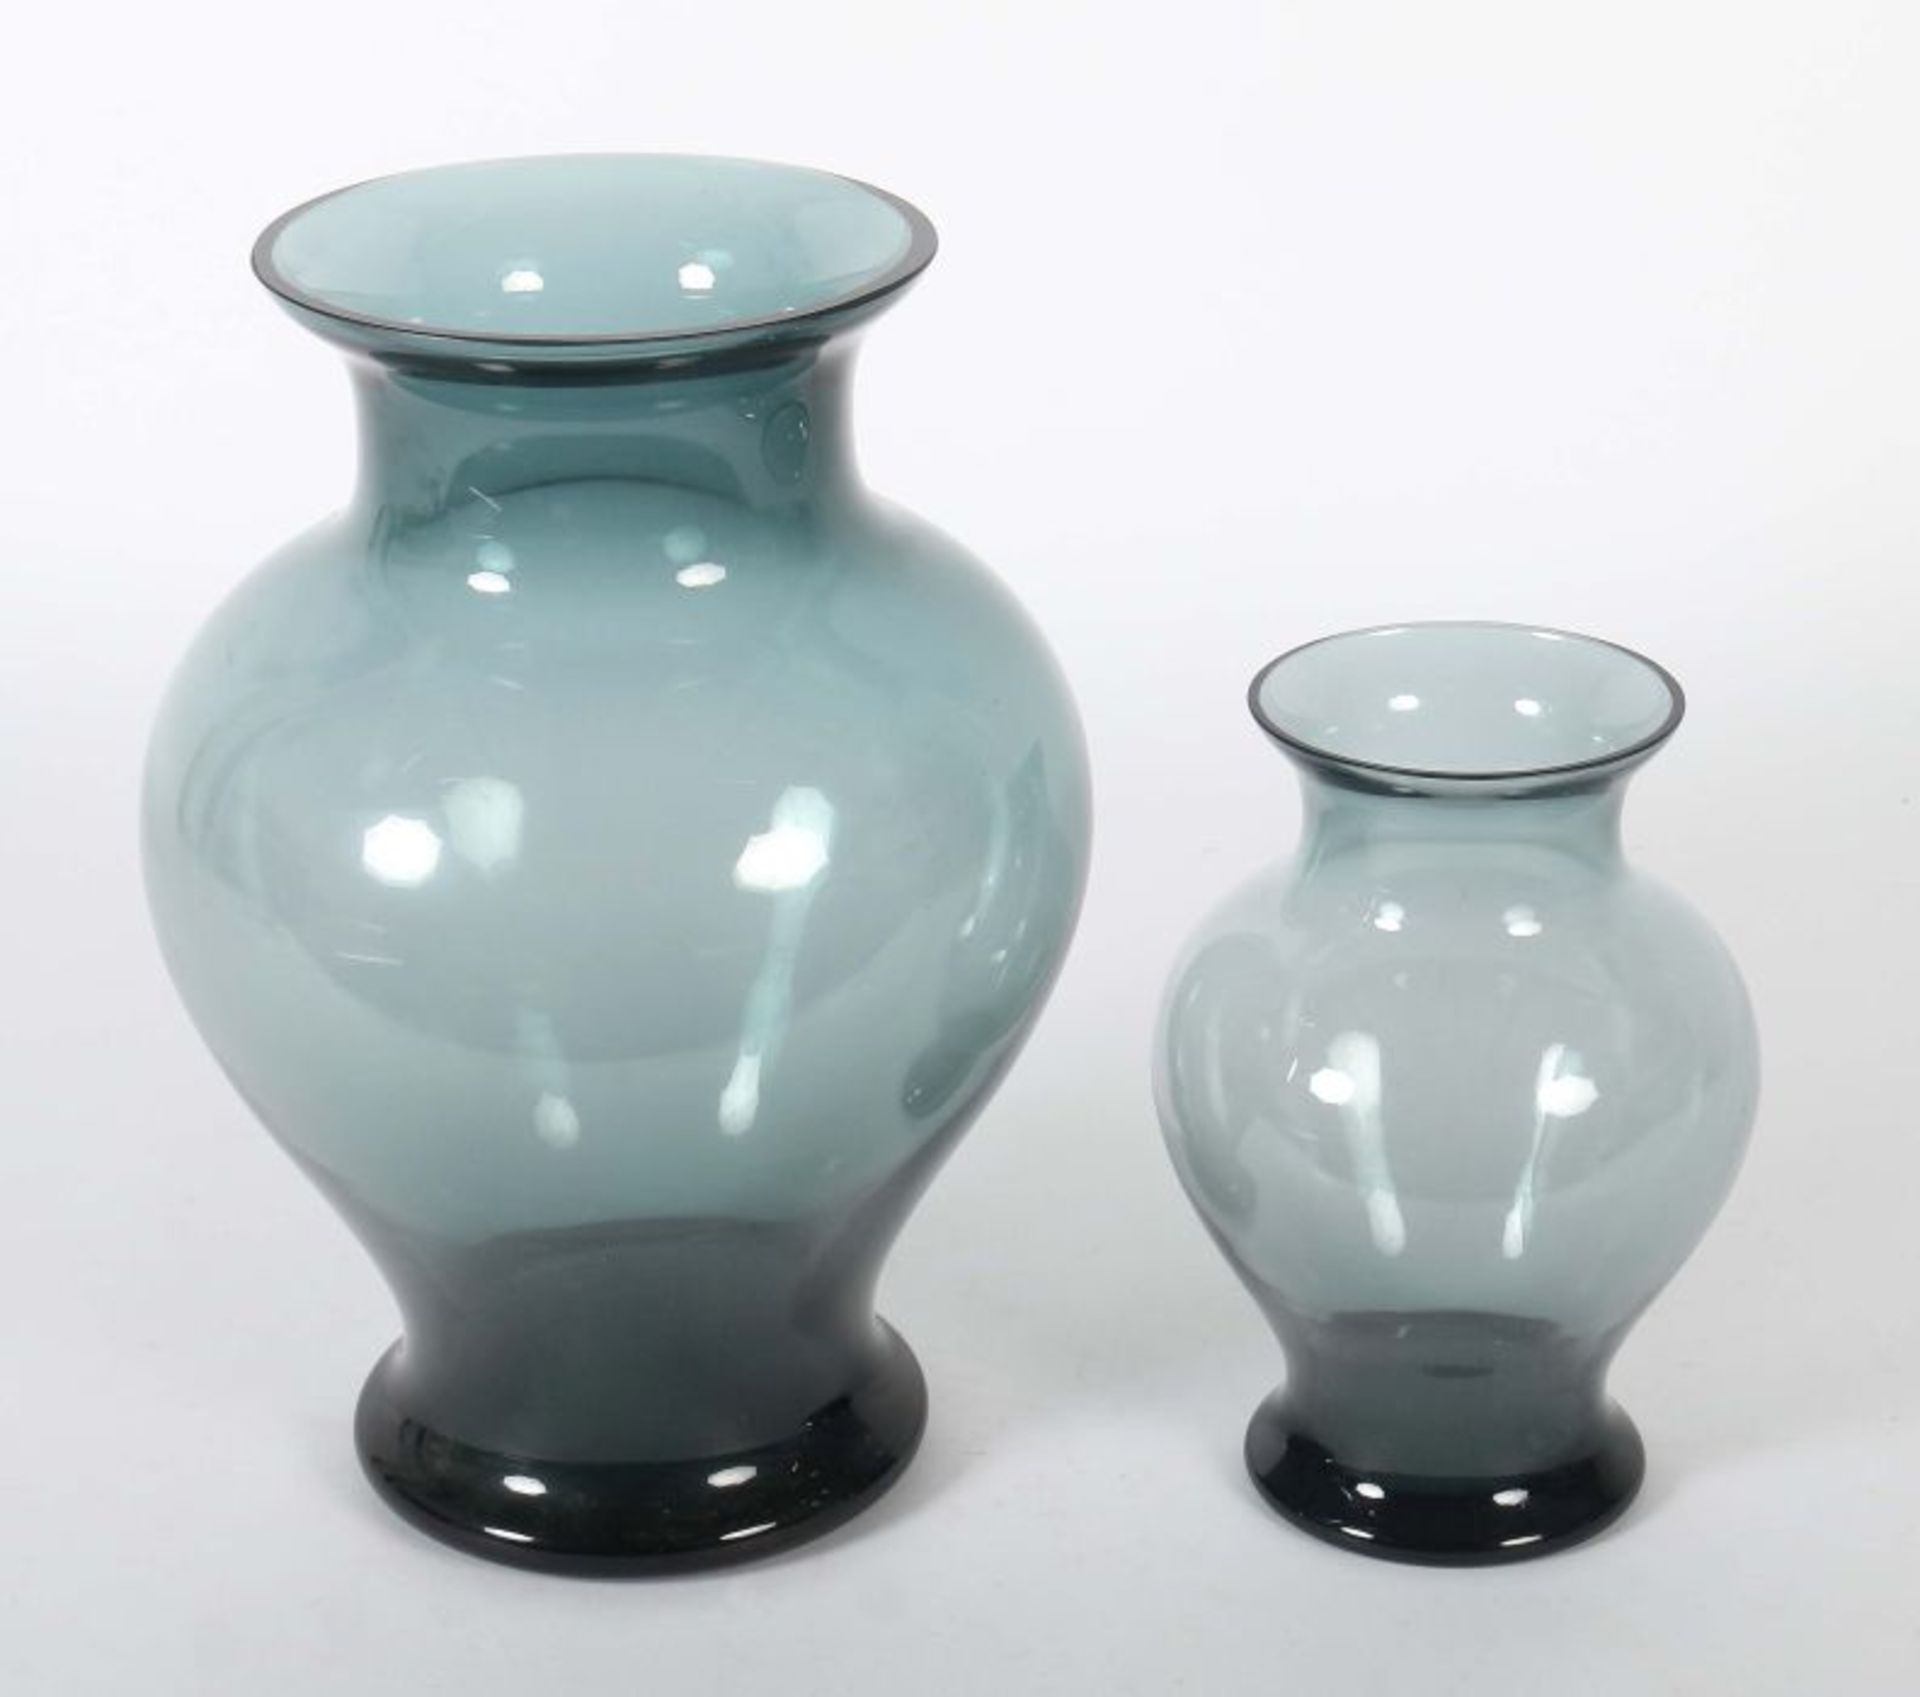 Jachmann, Erich Entwerfer für WMF. 2 Vasen, WMF, Geislingen, 1970er Jahre, turmalinfarbenes Glas, - Bild 2 aus 3